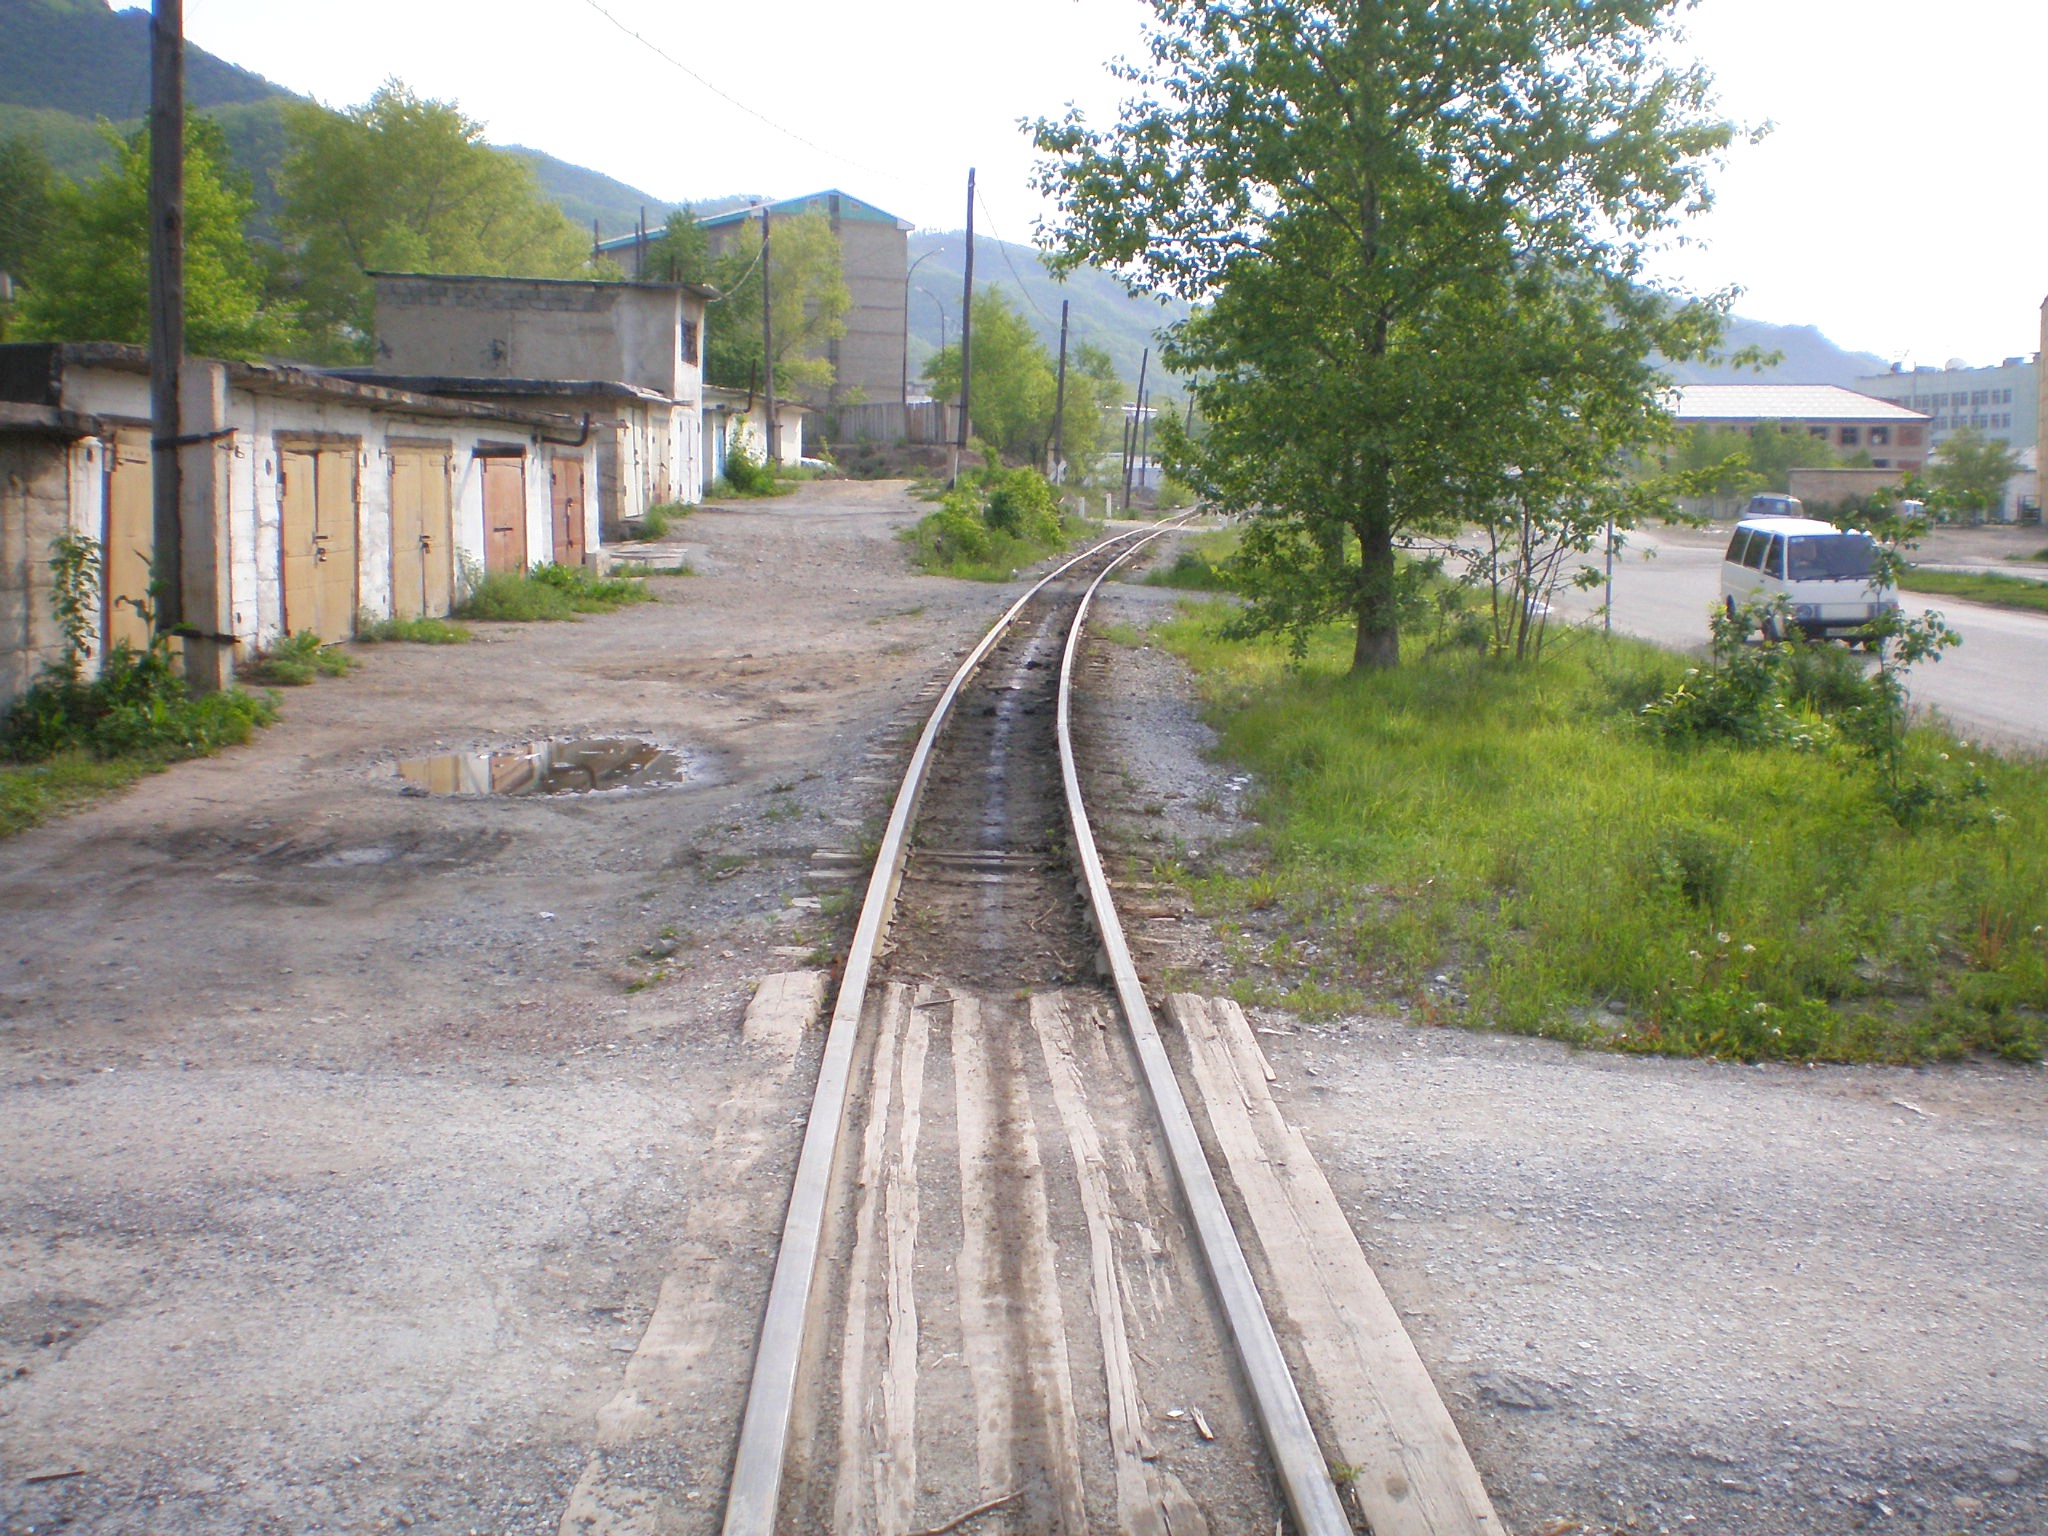 Тетюхинская узкоколейная железная дорога  —  фотографии, сделанные в 2008 году (часть 11)